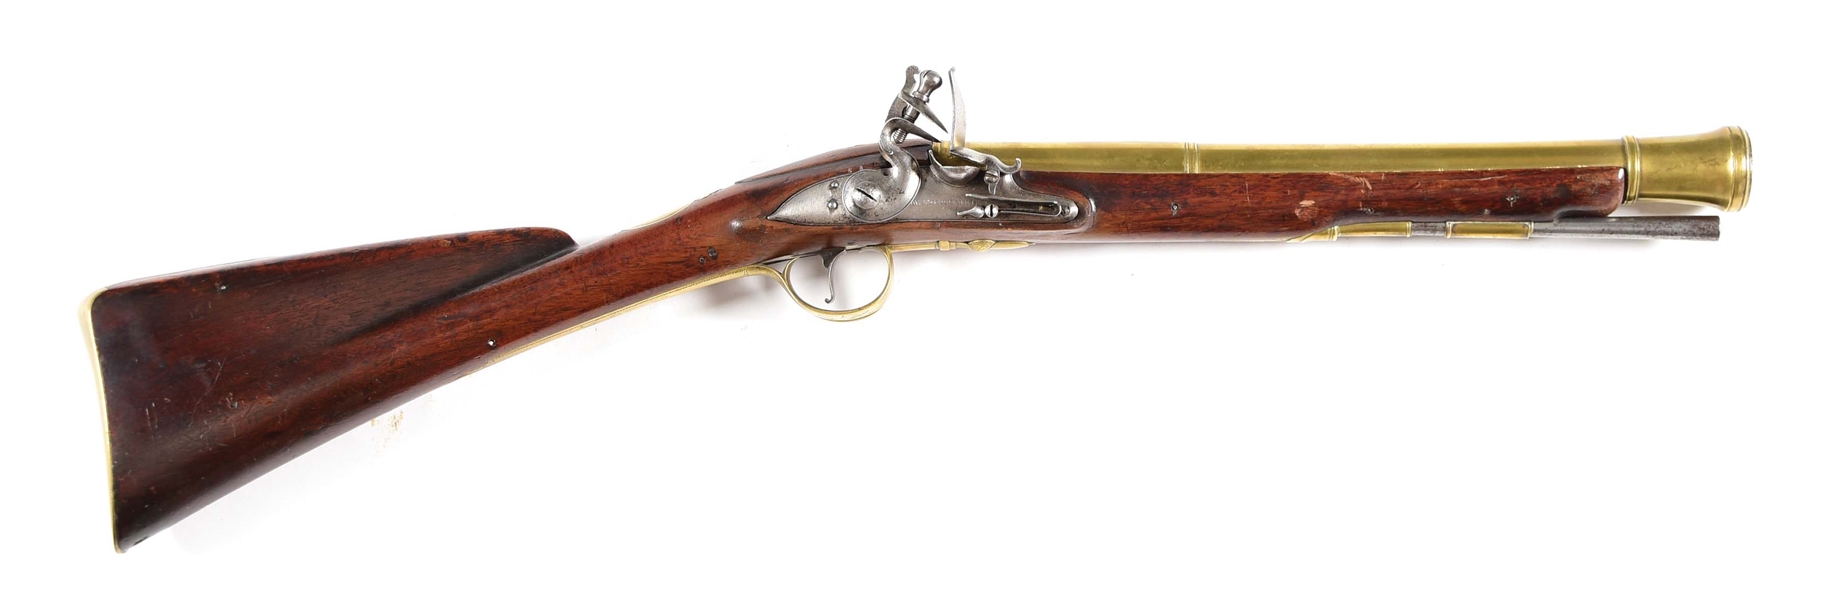 (A) A BRASS BARRELED FLINTLOCK BLUNDERBUSS BY THE RENOWNED ENGLISH GUN MAKER H.W. MORTIMER, WITH FLEET STREET ADDRESS, 1753-1819, WORKED AT 89 FLEET STREET 1800-1806.